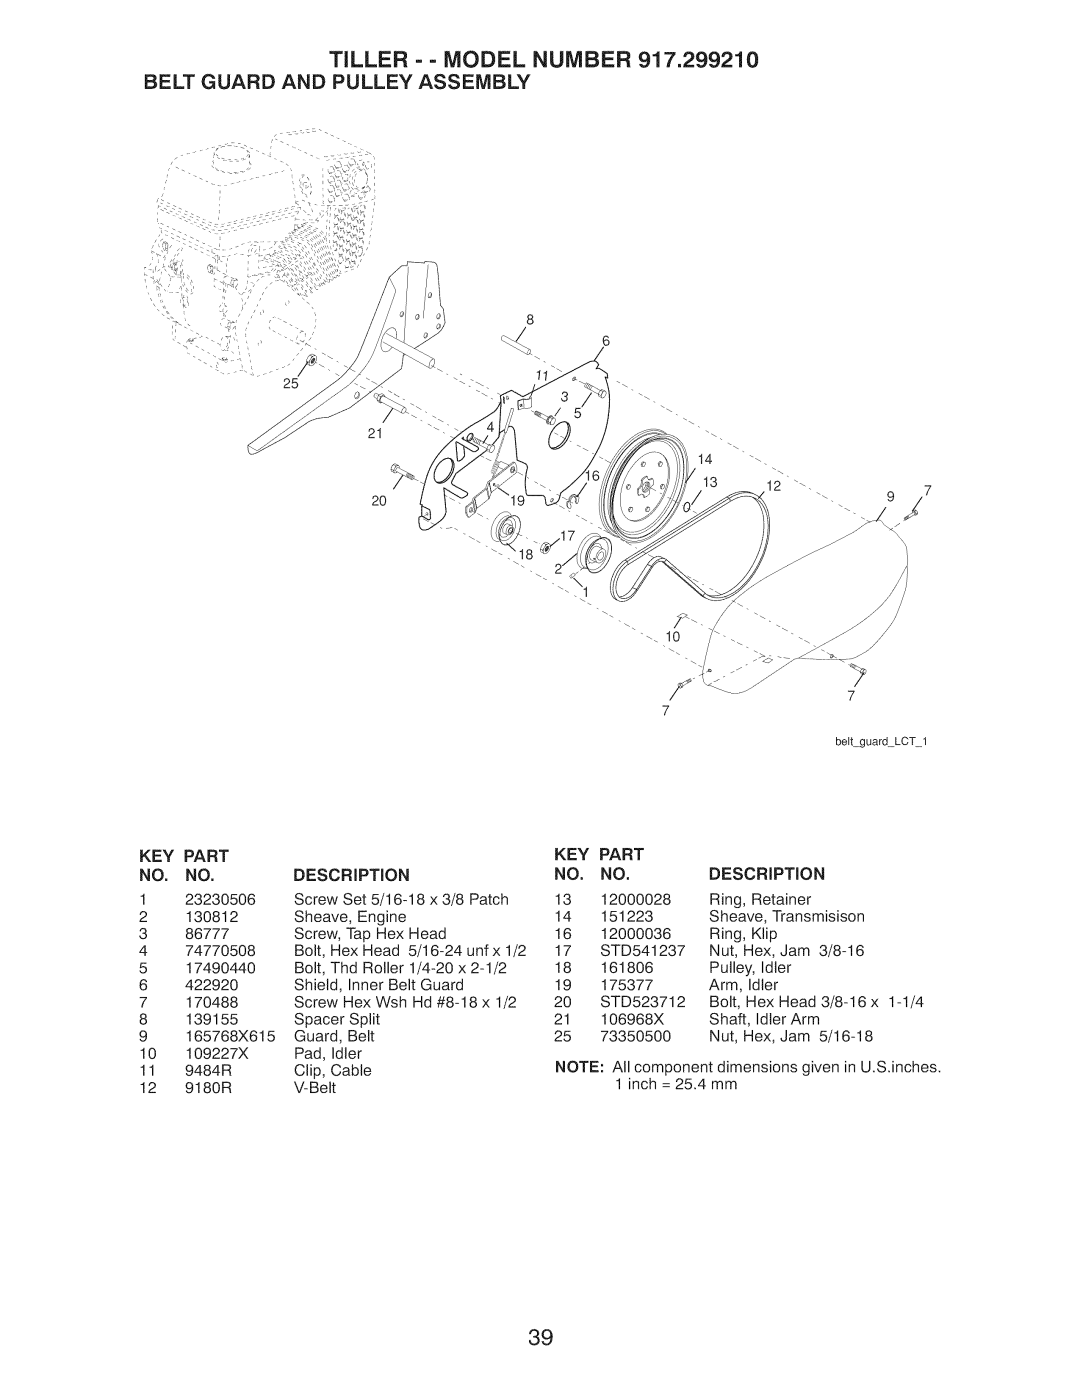 Craftsman 917.29921 owner manual Tiller - - Model Number, Belt Guard And Pulley Assembly, Part 